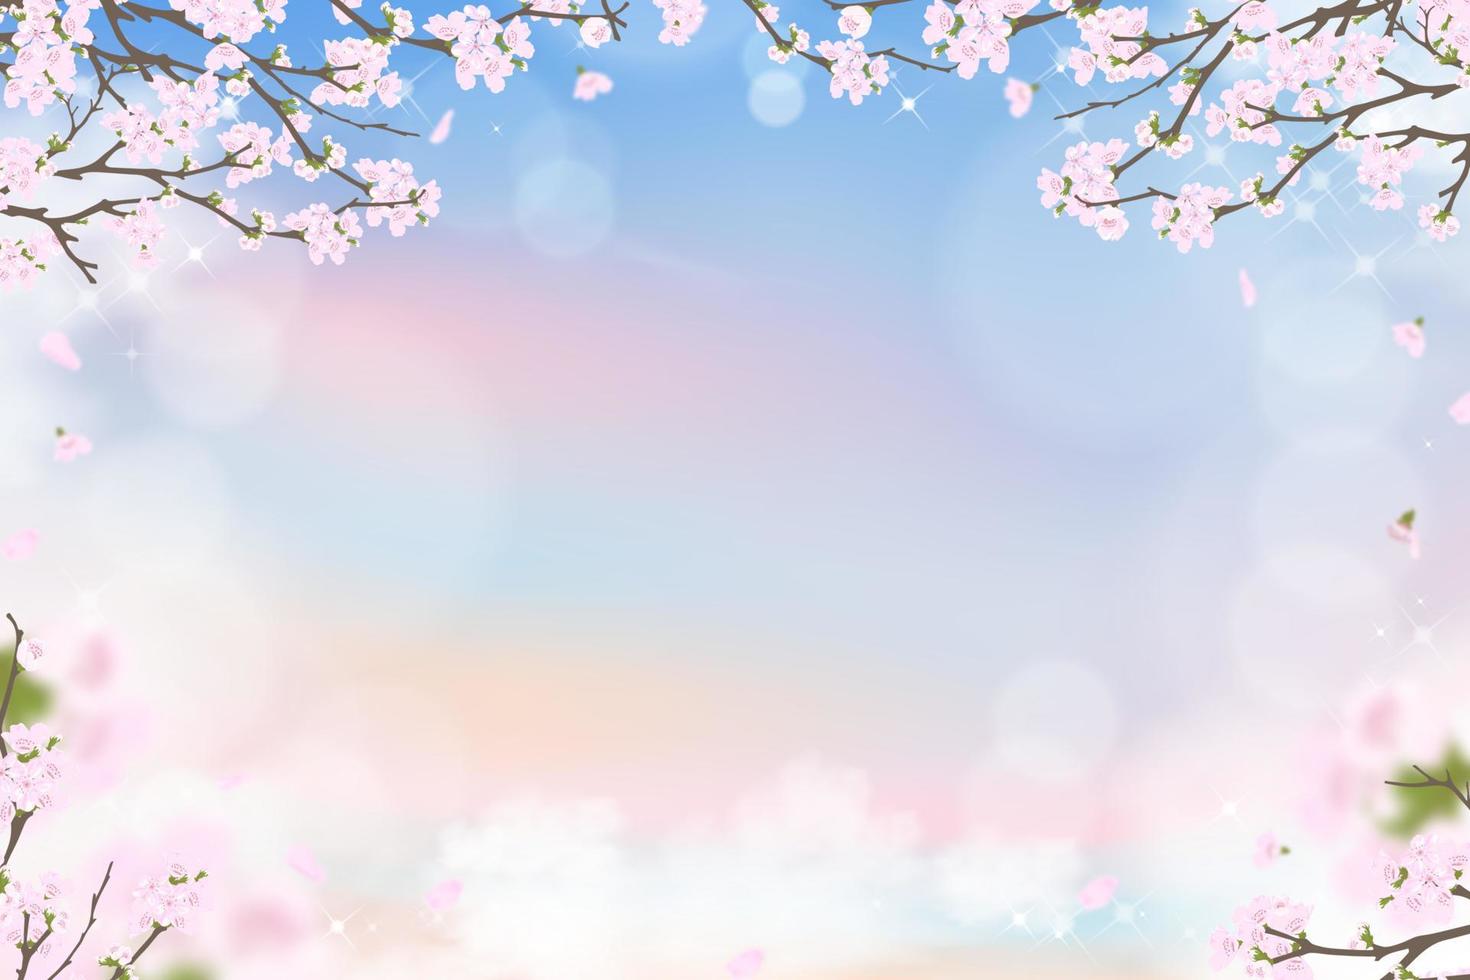 flor de cerezo de primavera sobre fondo de cielo azul y rosa pastel, ilustración vectorial flor de sakura rosa que florece en primavera con pétalos que caen, pancarta de fondo dulce para la venta de primavera o verano vector